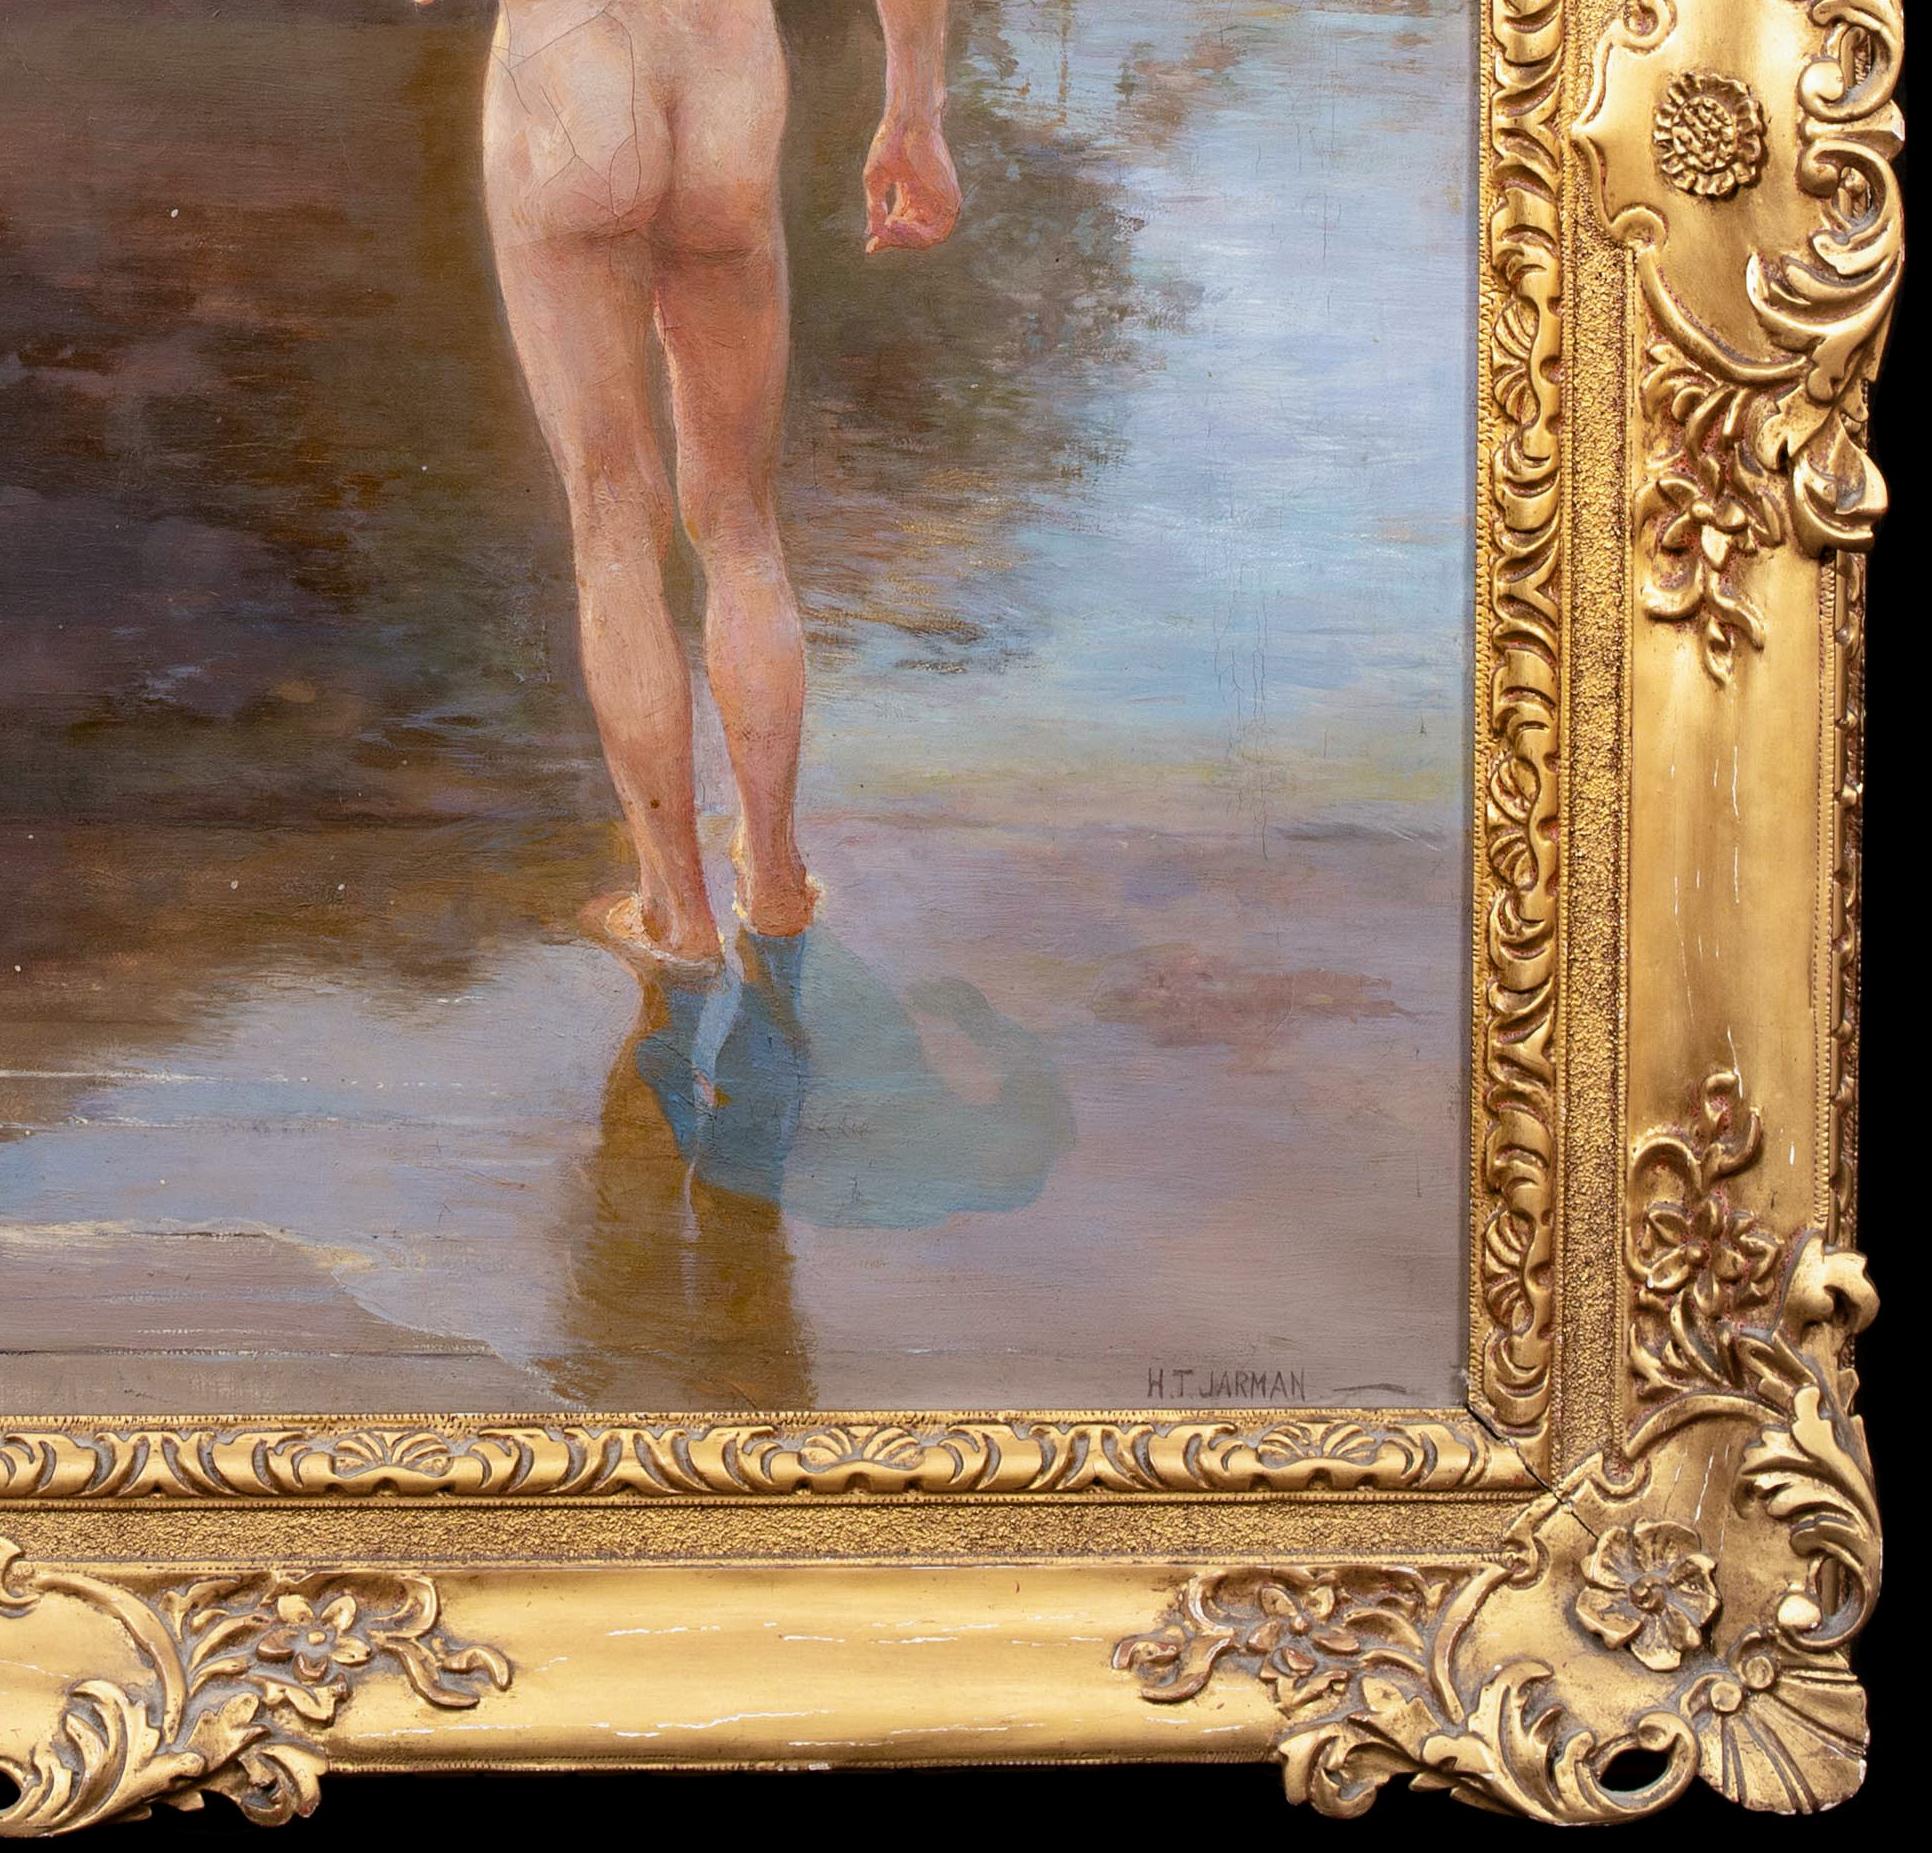 Nude Boys At A Lake, circa 1920  by Henry Thomas Jarman (1871-1956) 1